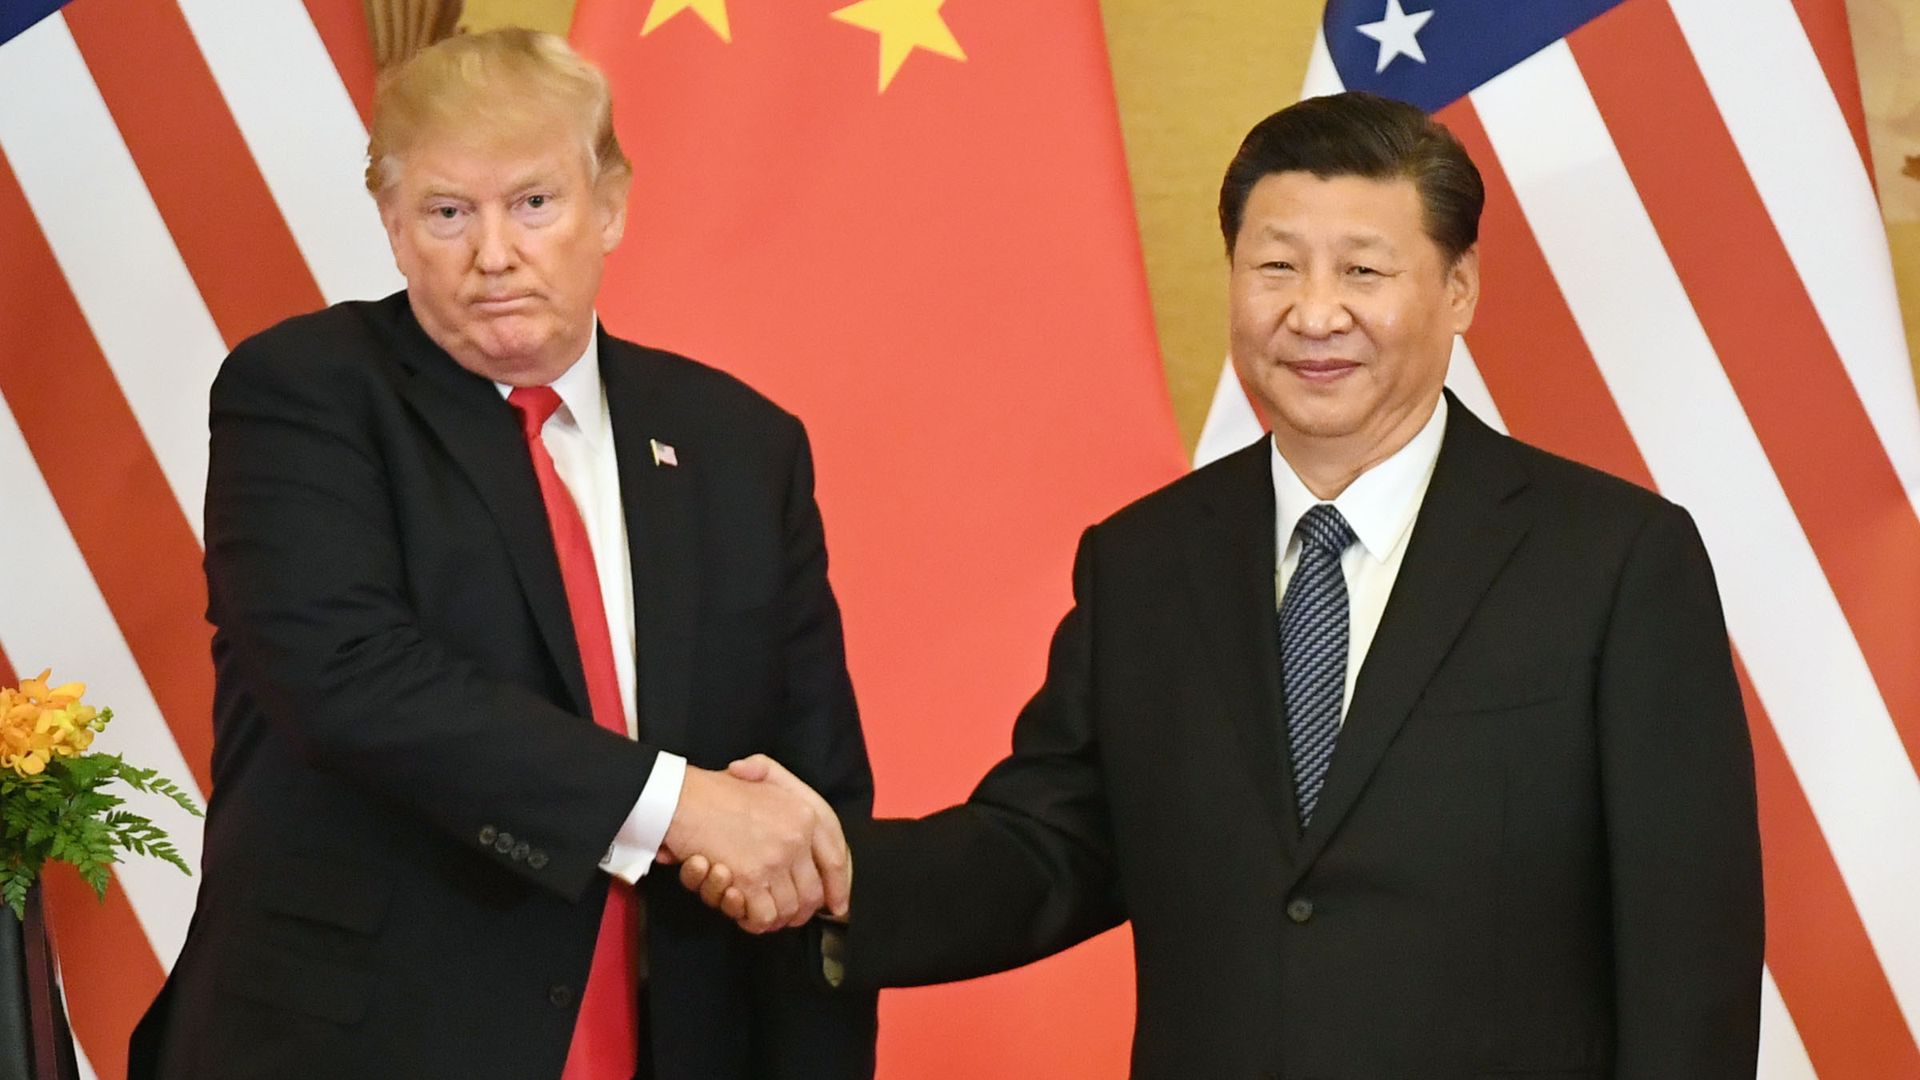 Donald Trump shakes Xi Jinping's hand.